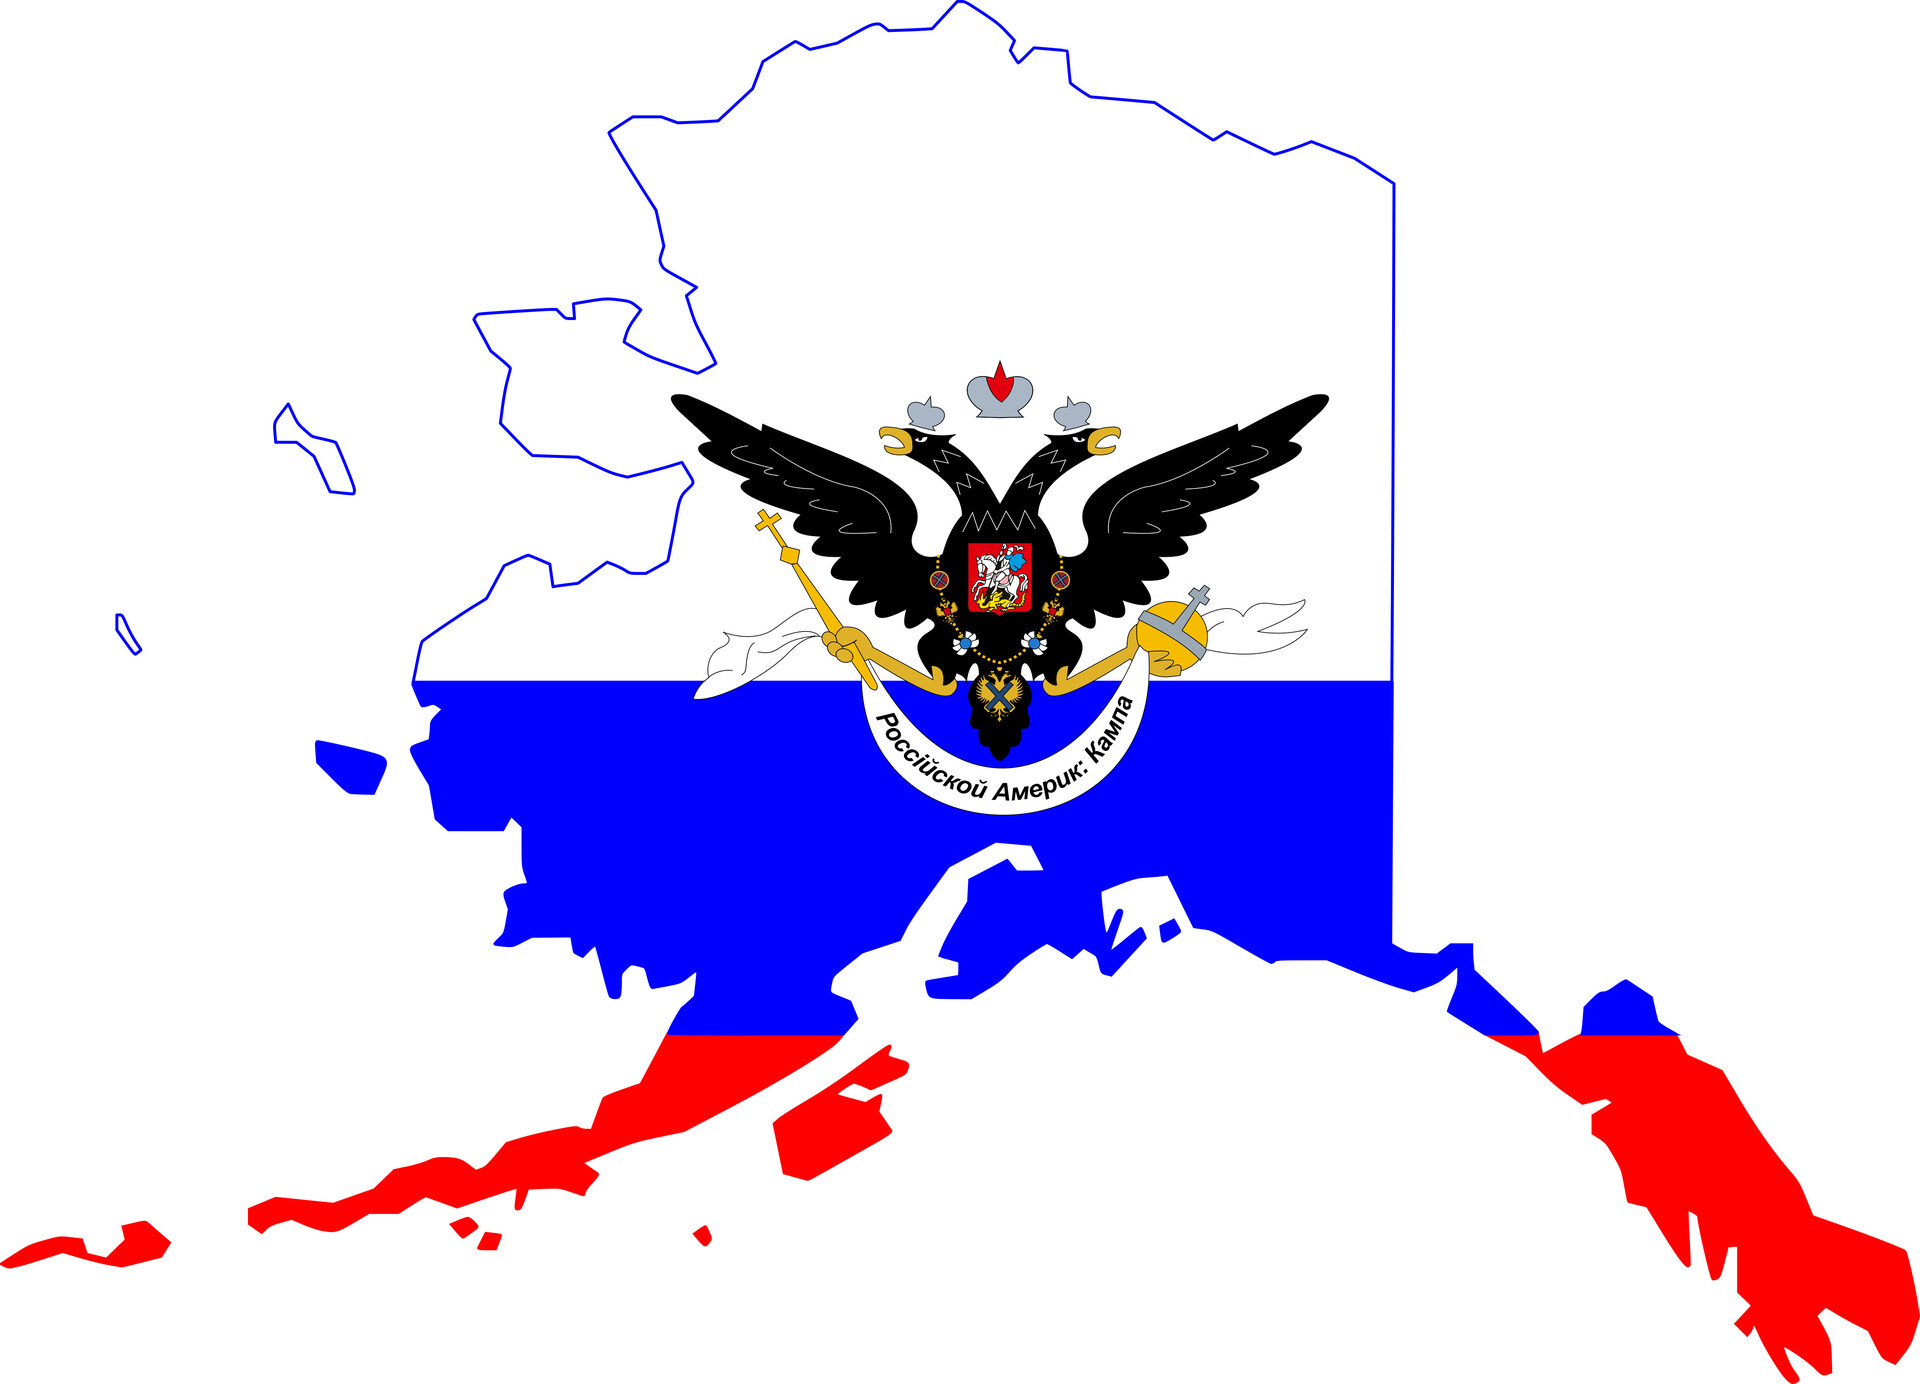 Mapa-bandera de la Compañía Ruso-Americana.